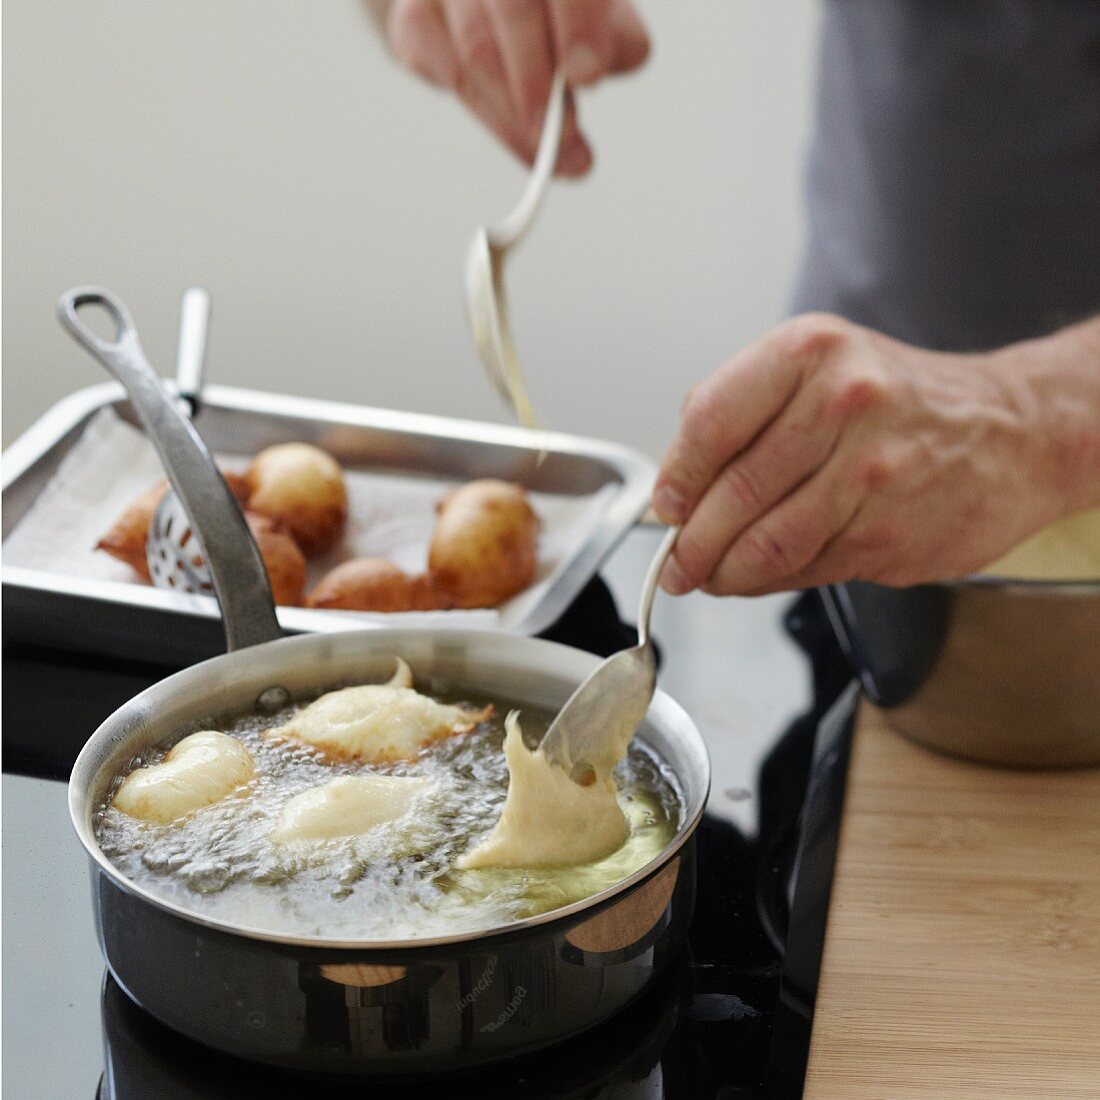 Deep-frying spoons full of Croustillons batter in hot oil